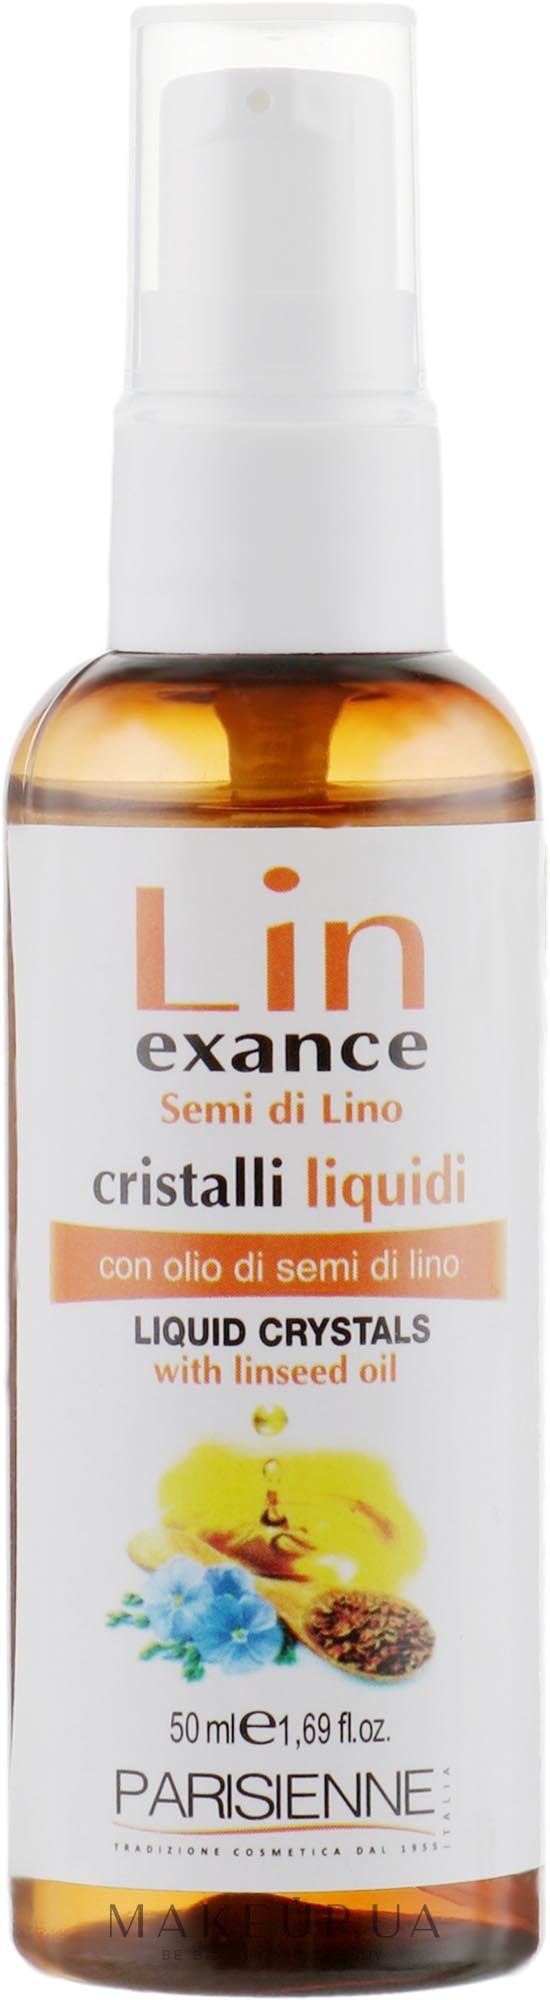 Жидкие кристаллы для укрепления волос с экстрактом семян льна - Parisienne Italia Lin Exance — фото 50ml